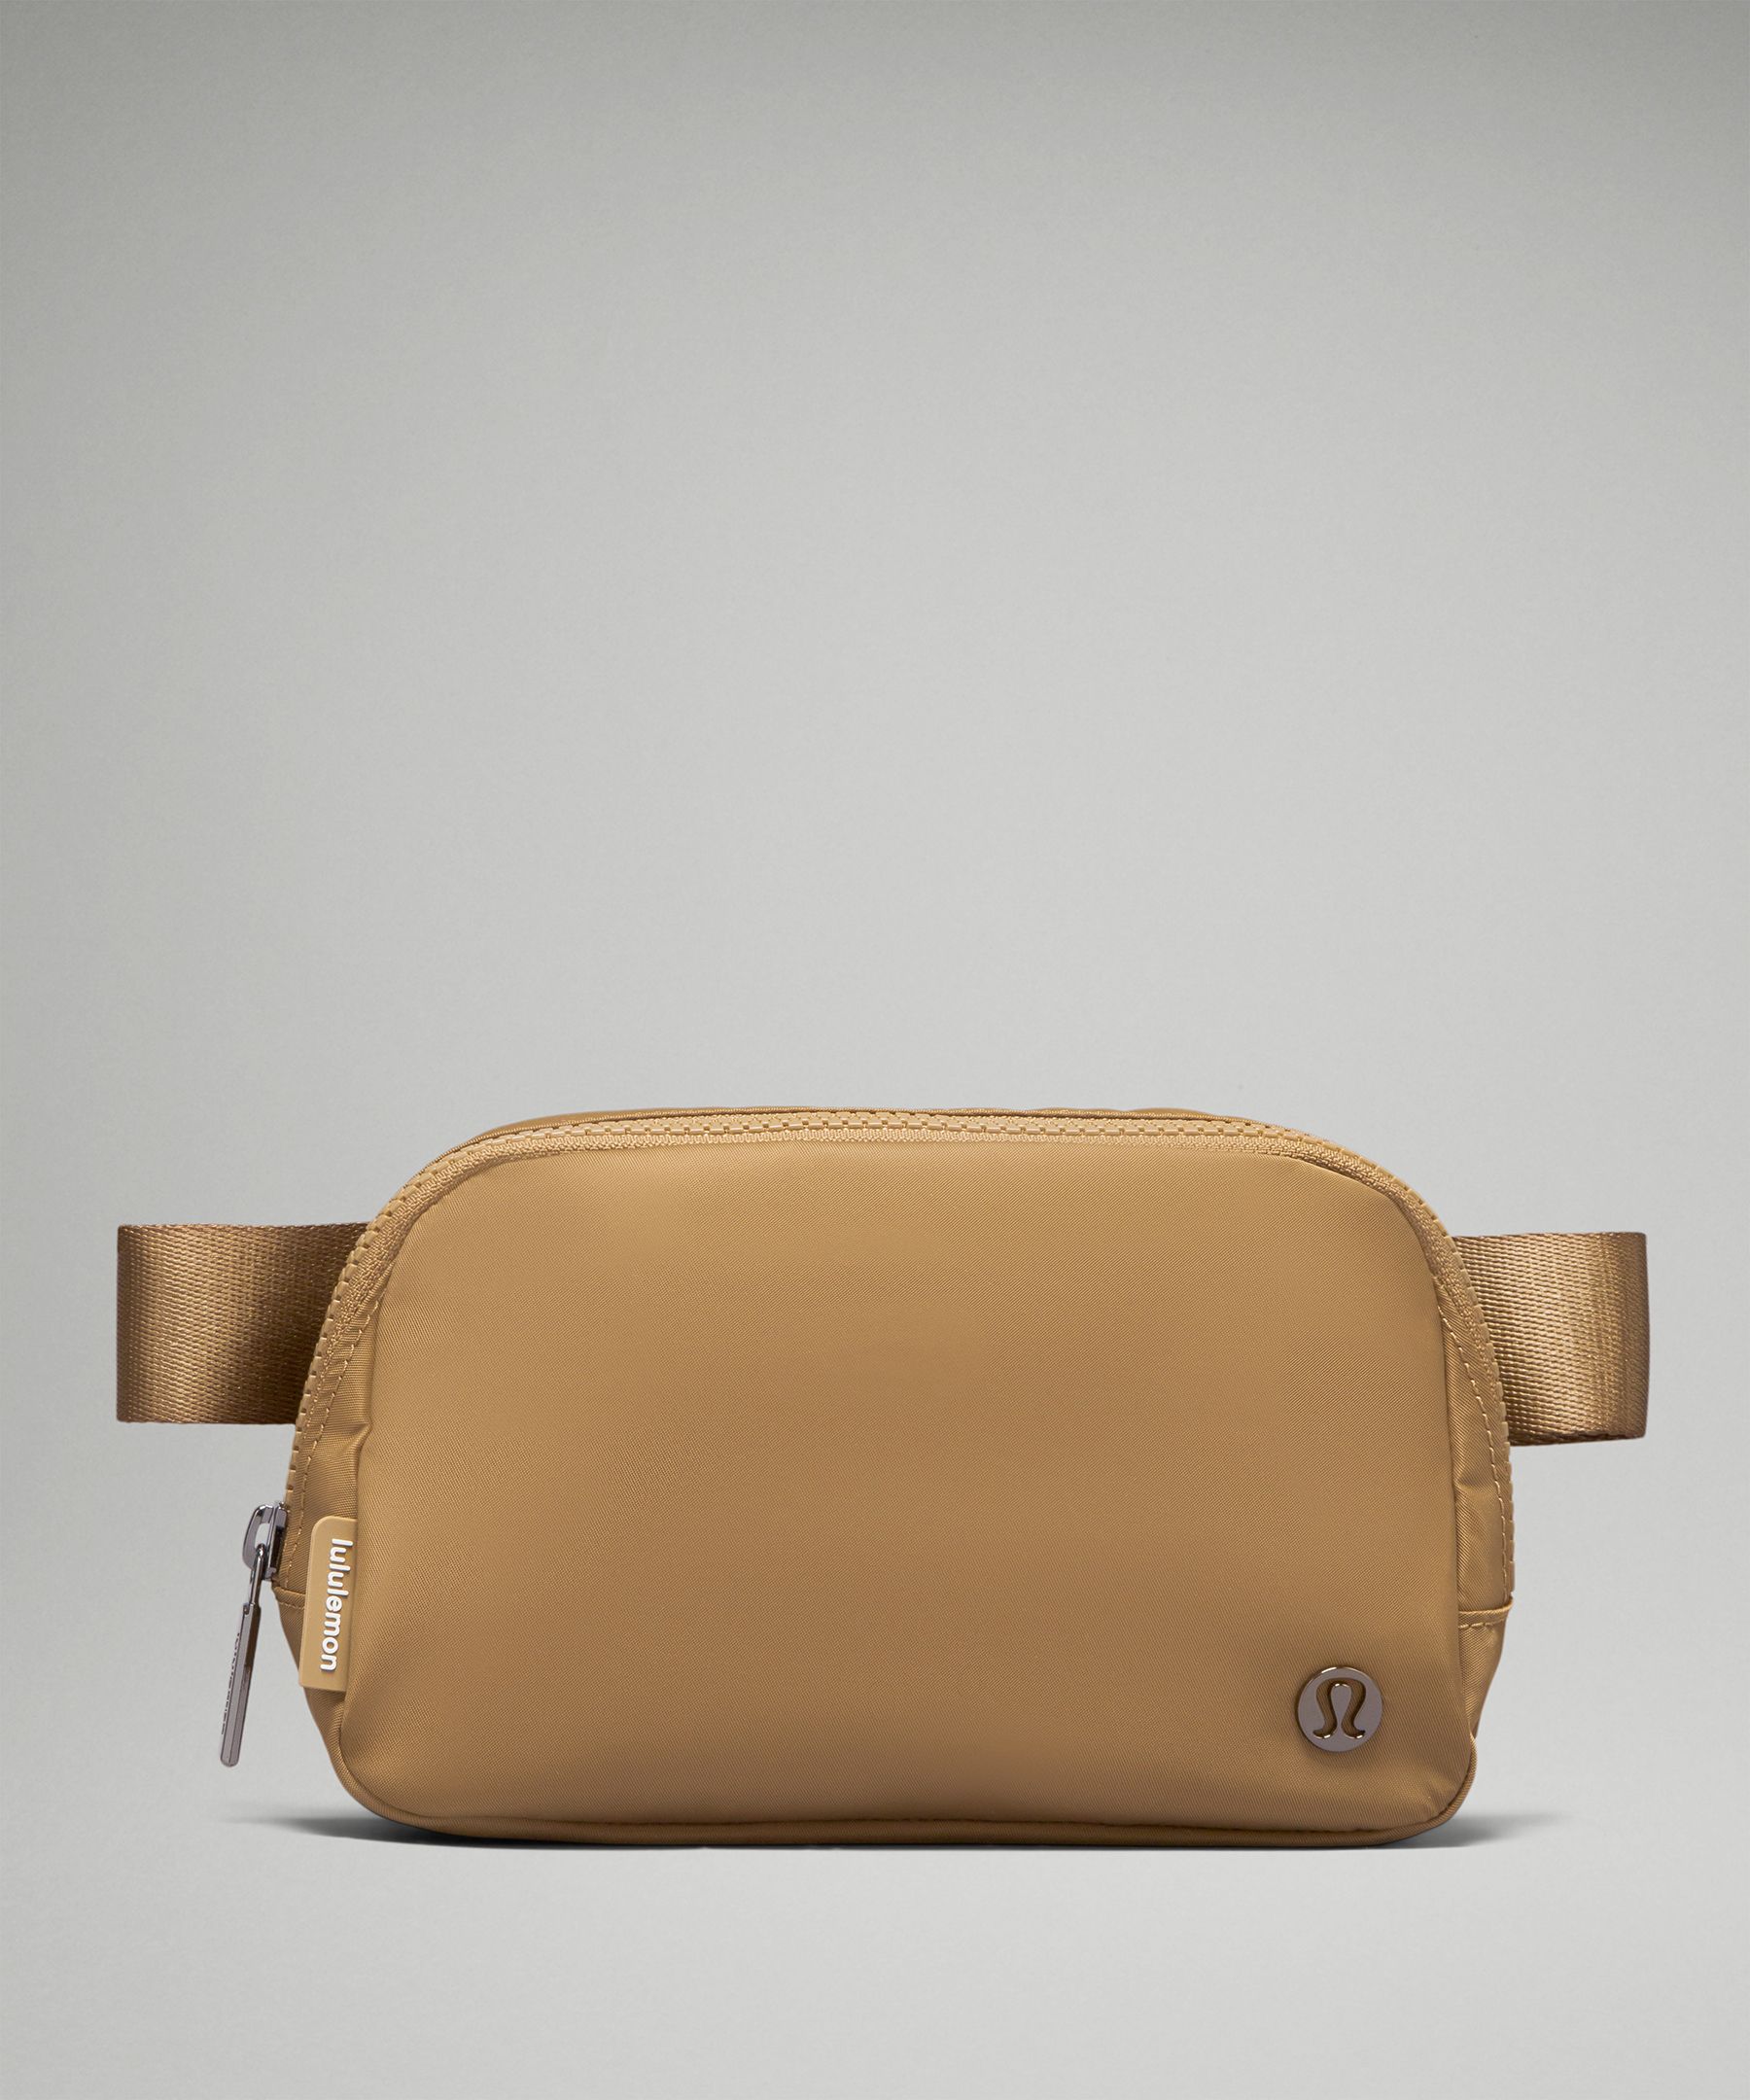 Lululemon Everyday Belt Bag 1L - NWT! Choose Color!